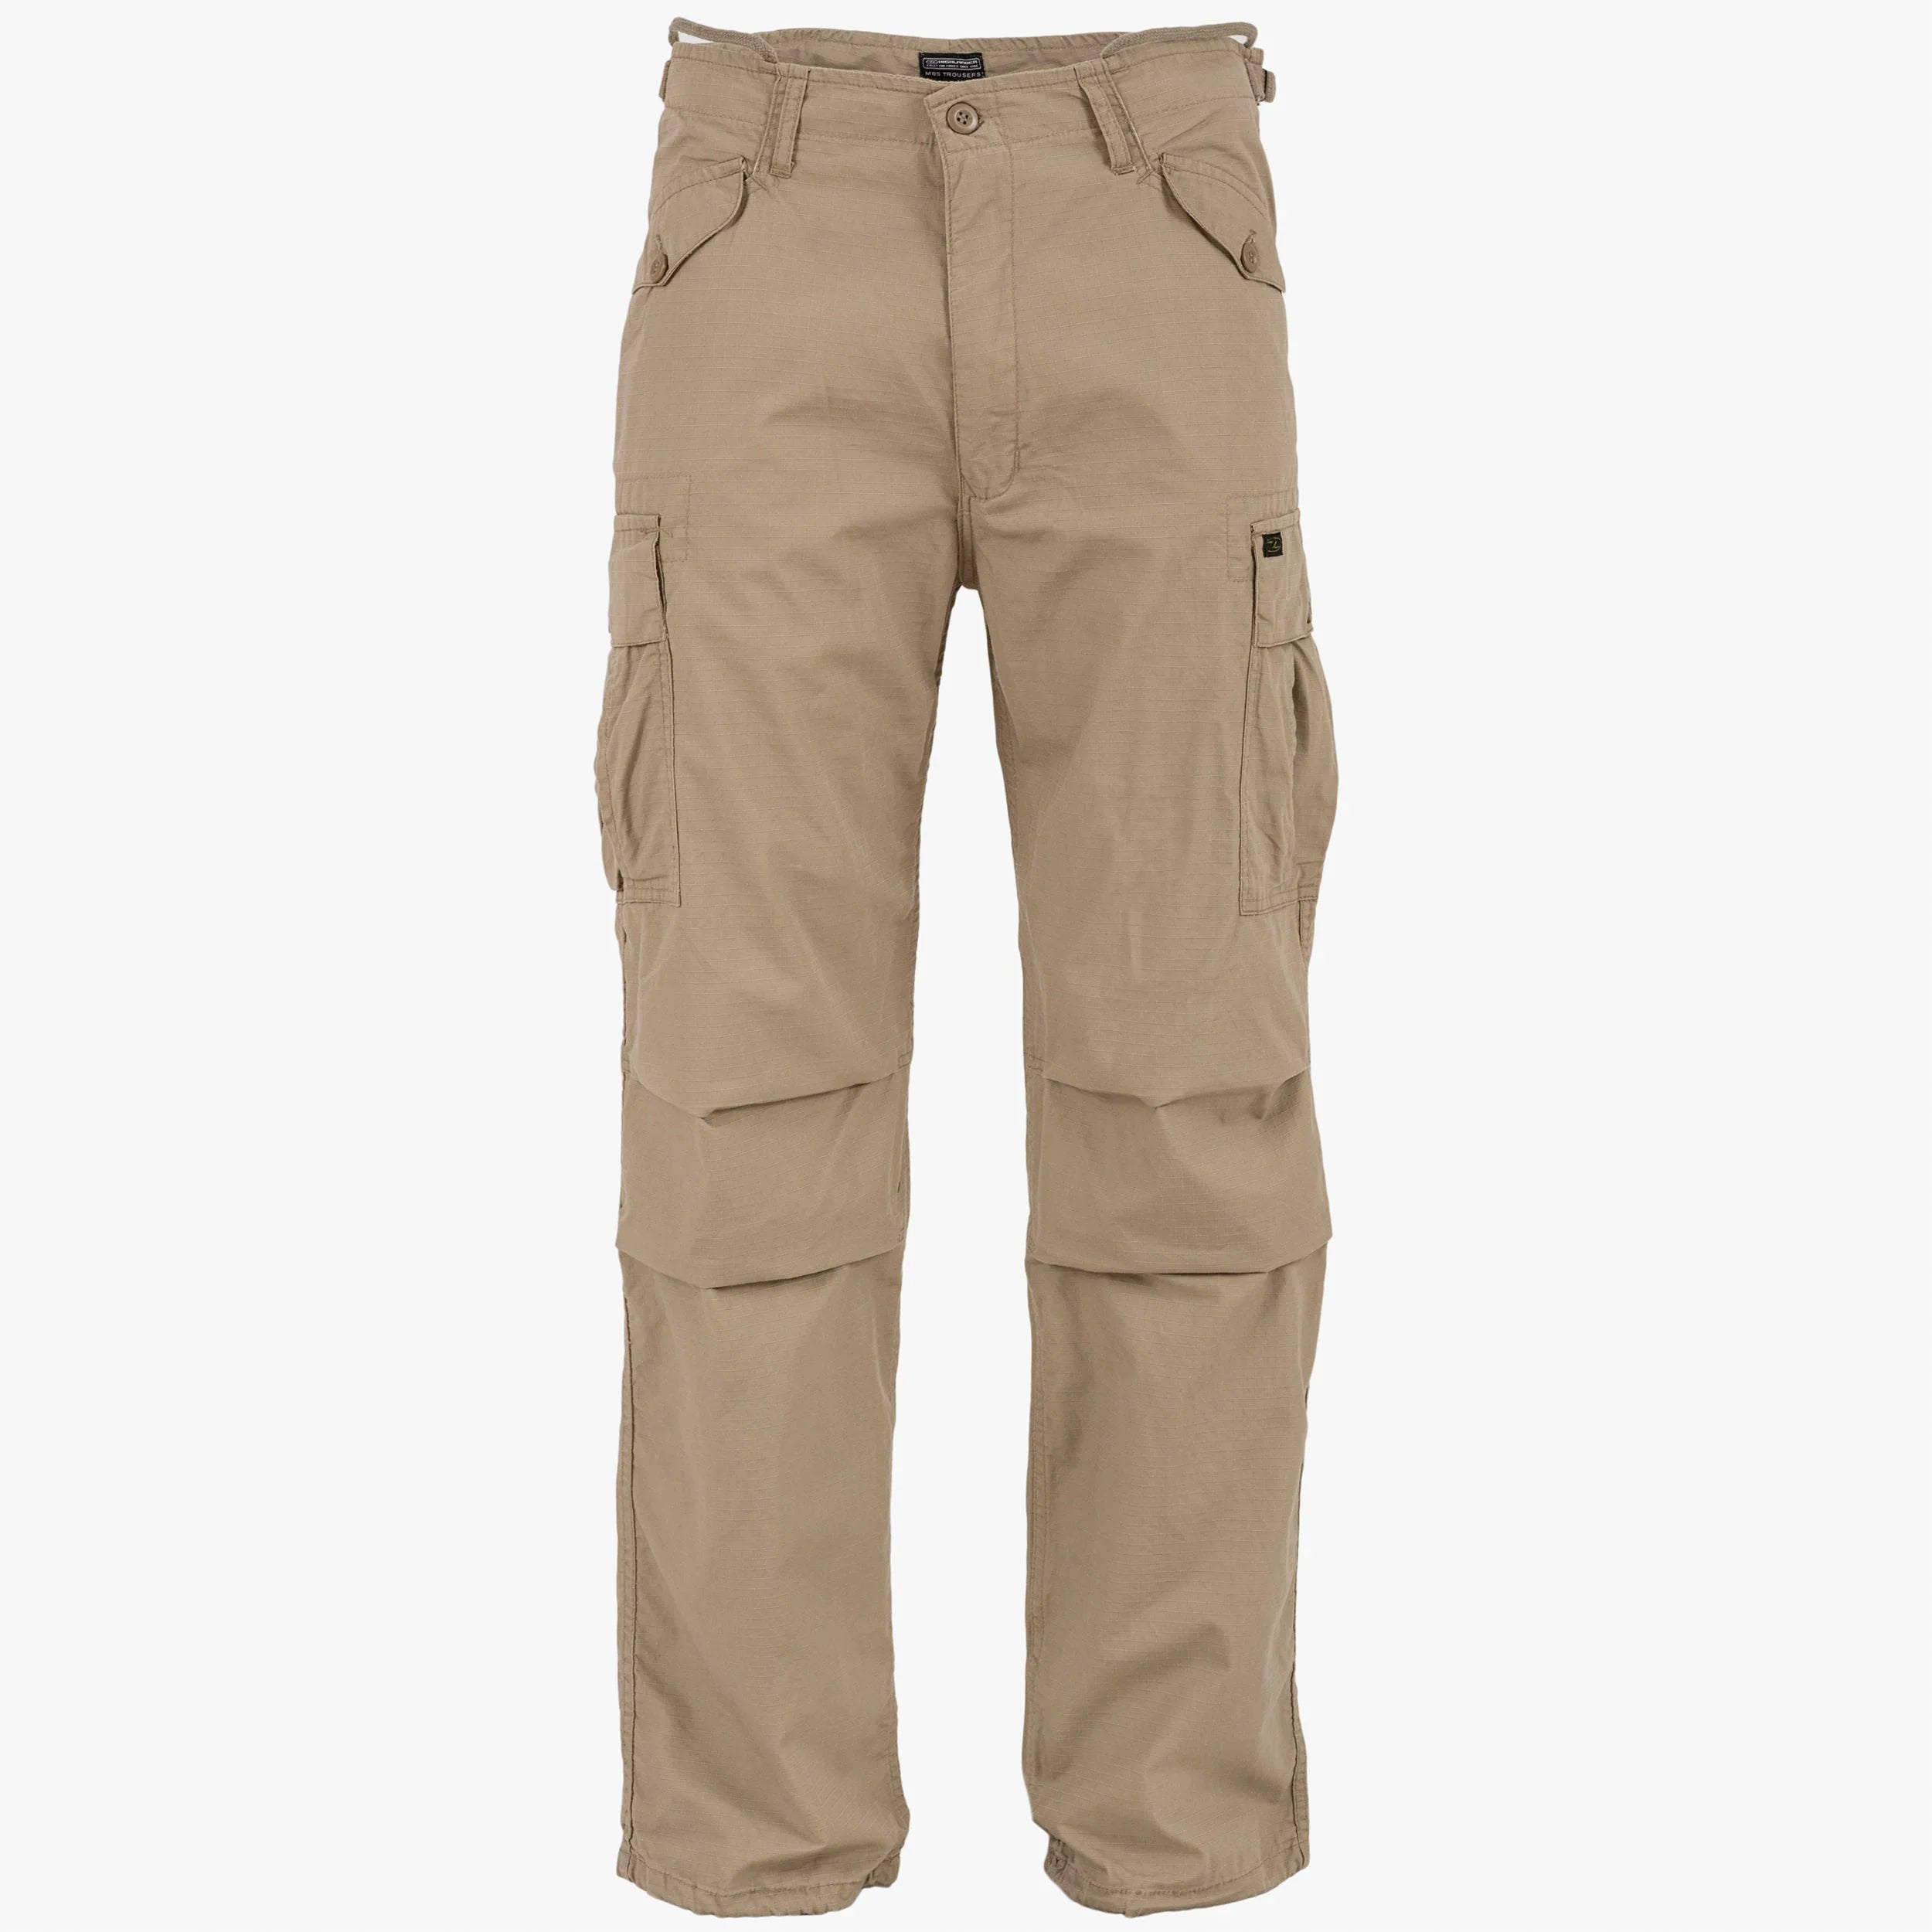 HIGHLANDER Regular Fit Men Khaki Trousers - Buy HIGHLANDER Regular Fit Men  Khaki Trousers Online at Best Prices in India | Flipkart.com